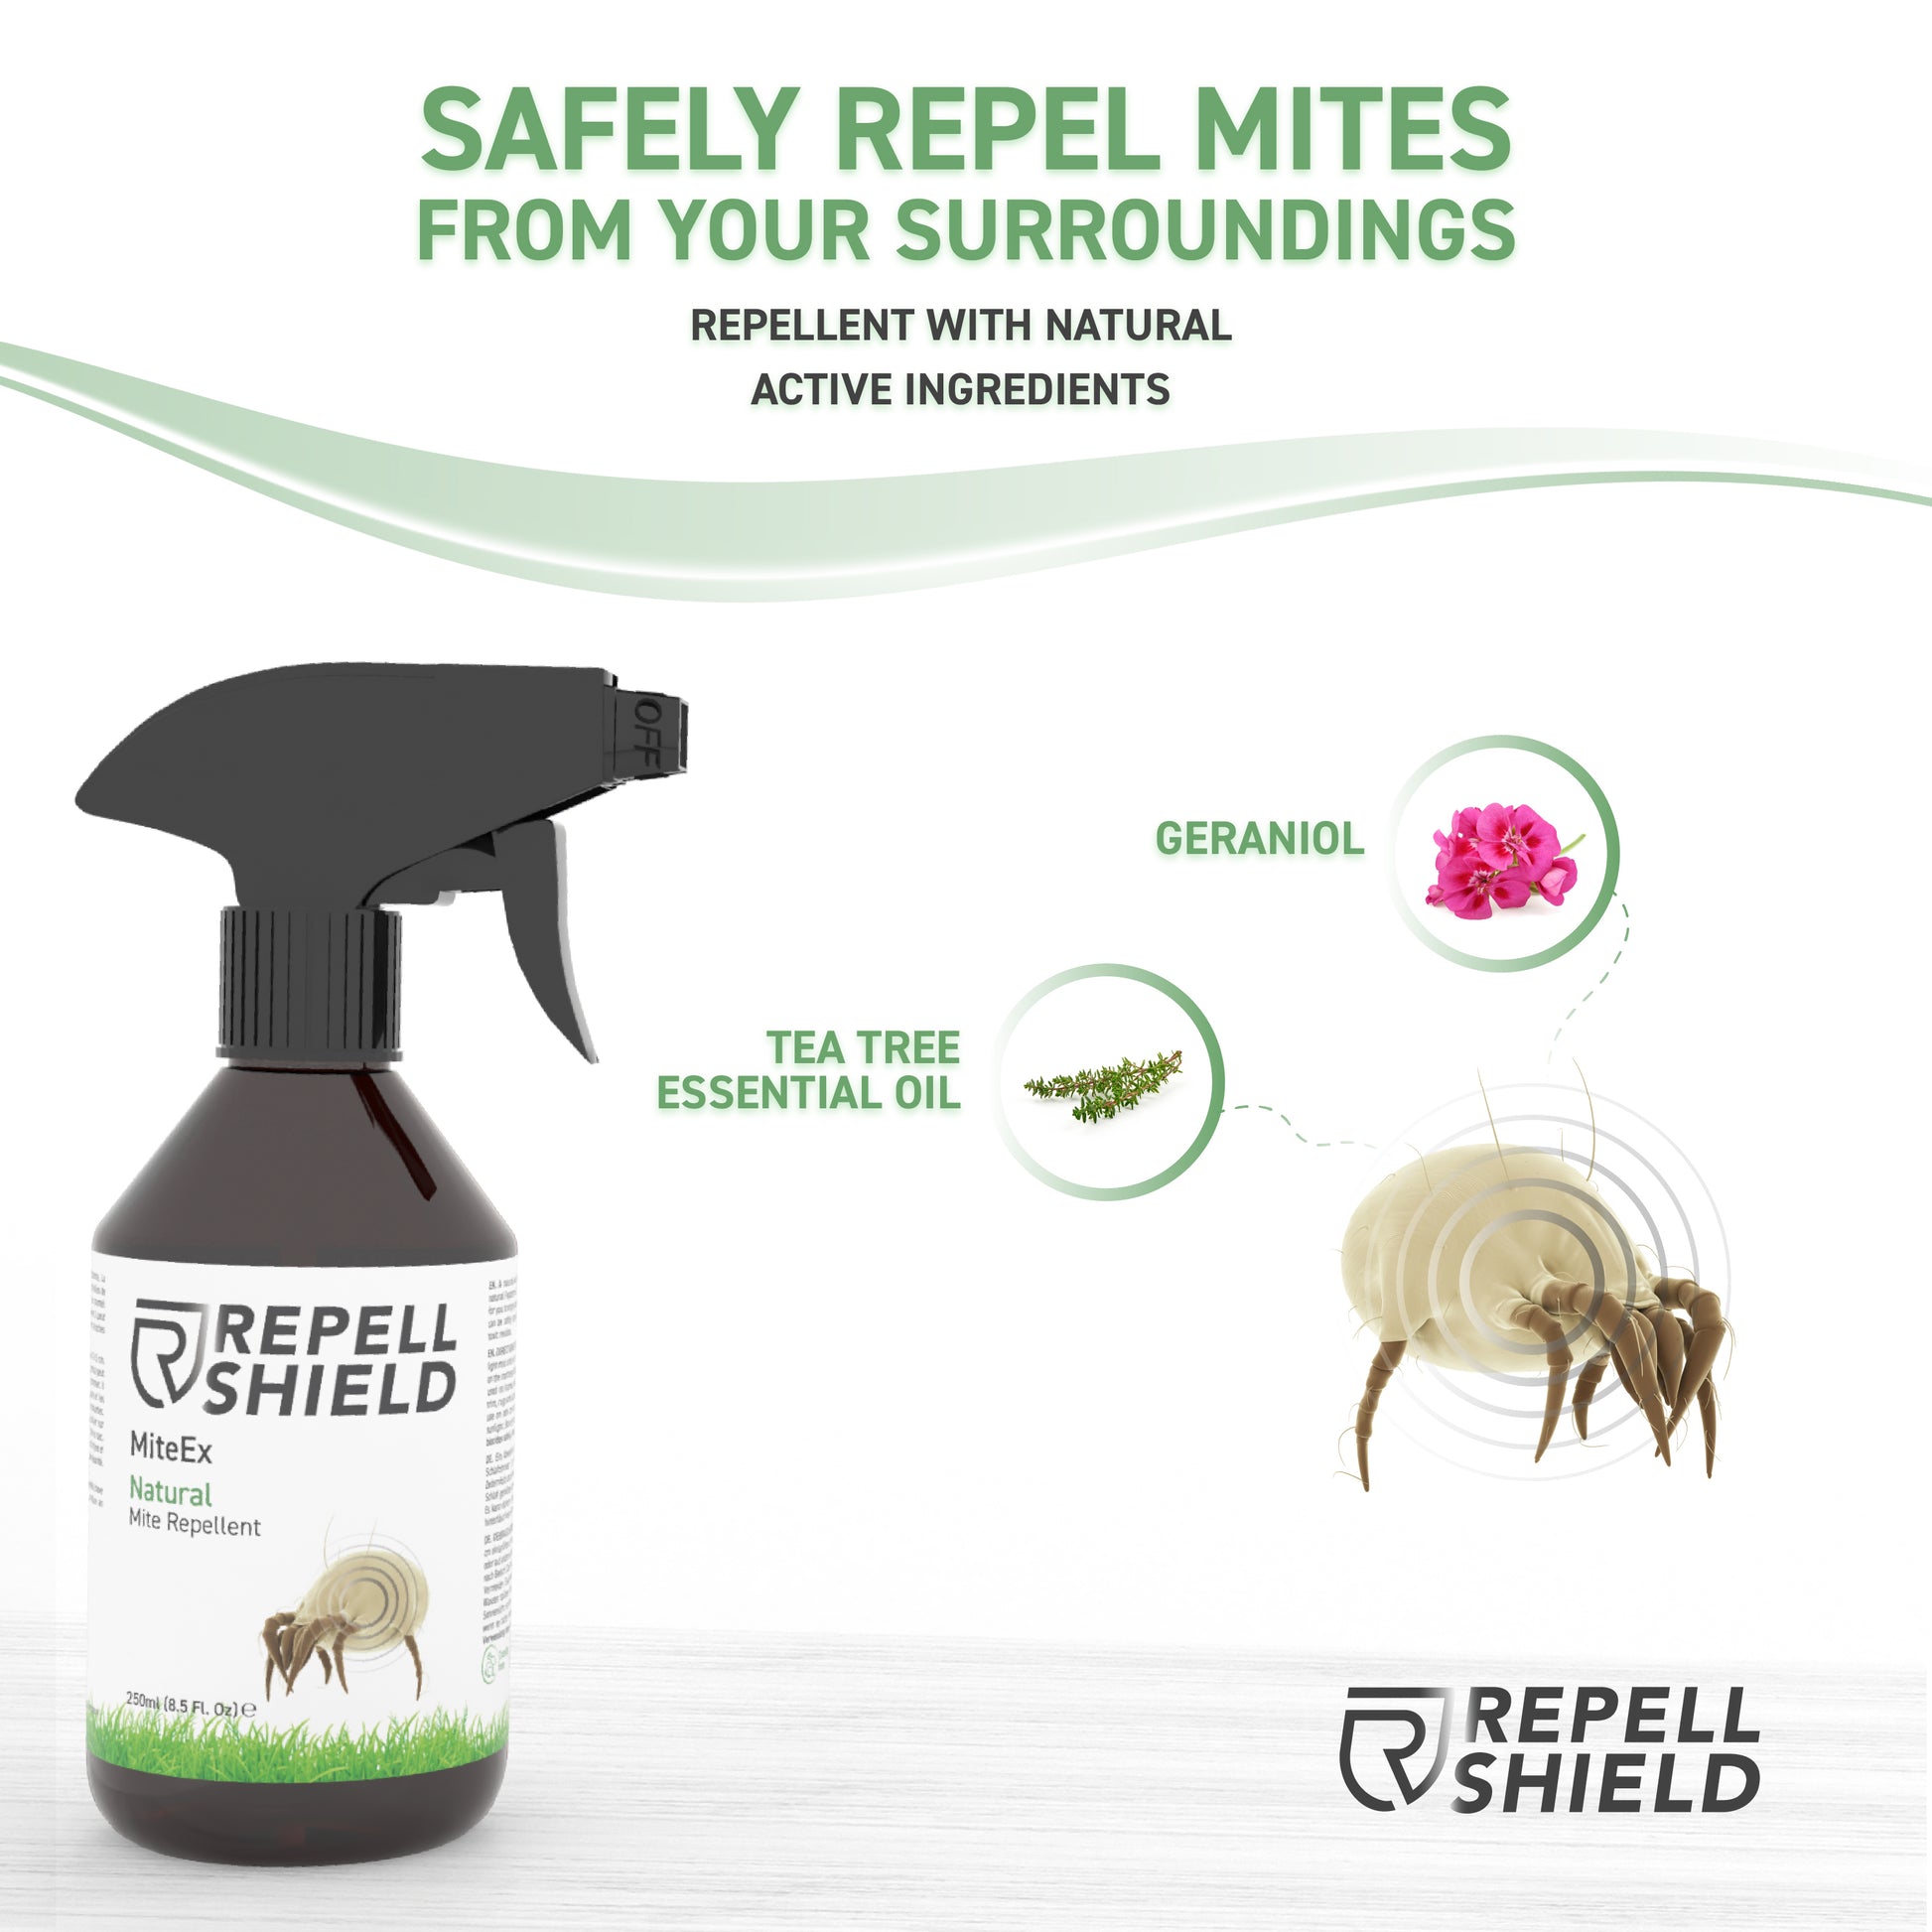 RepellShield Natural Mite Repellent Spray